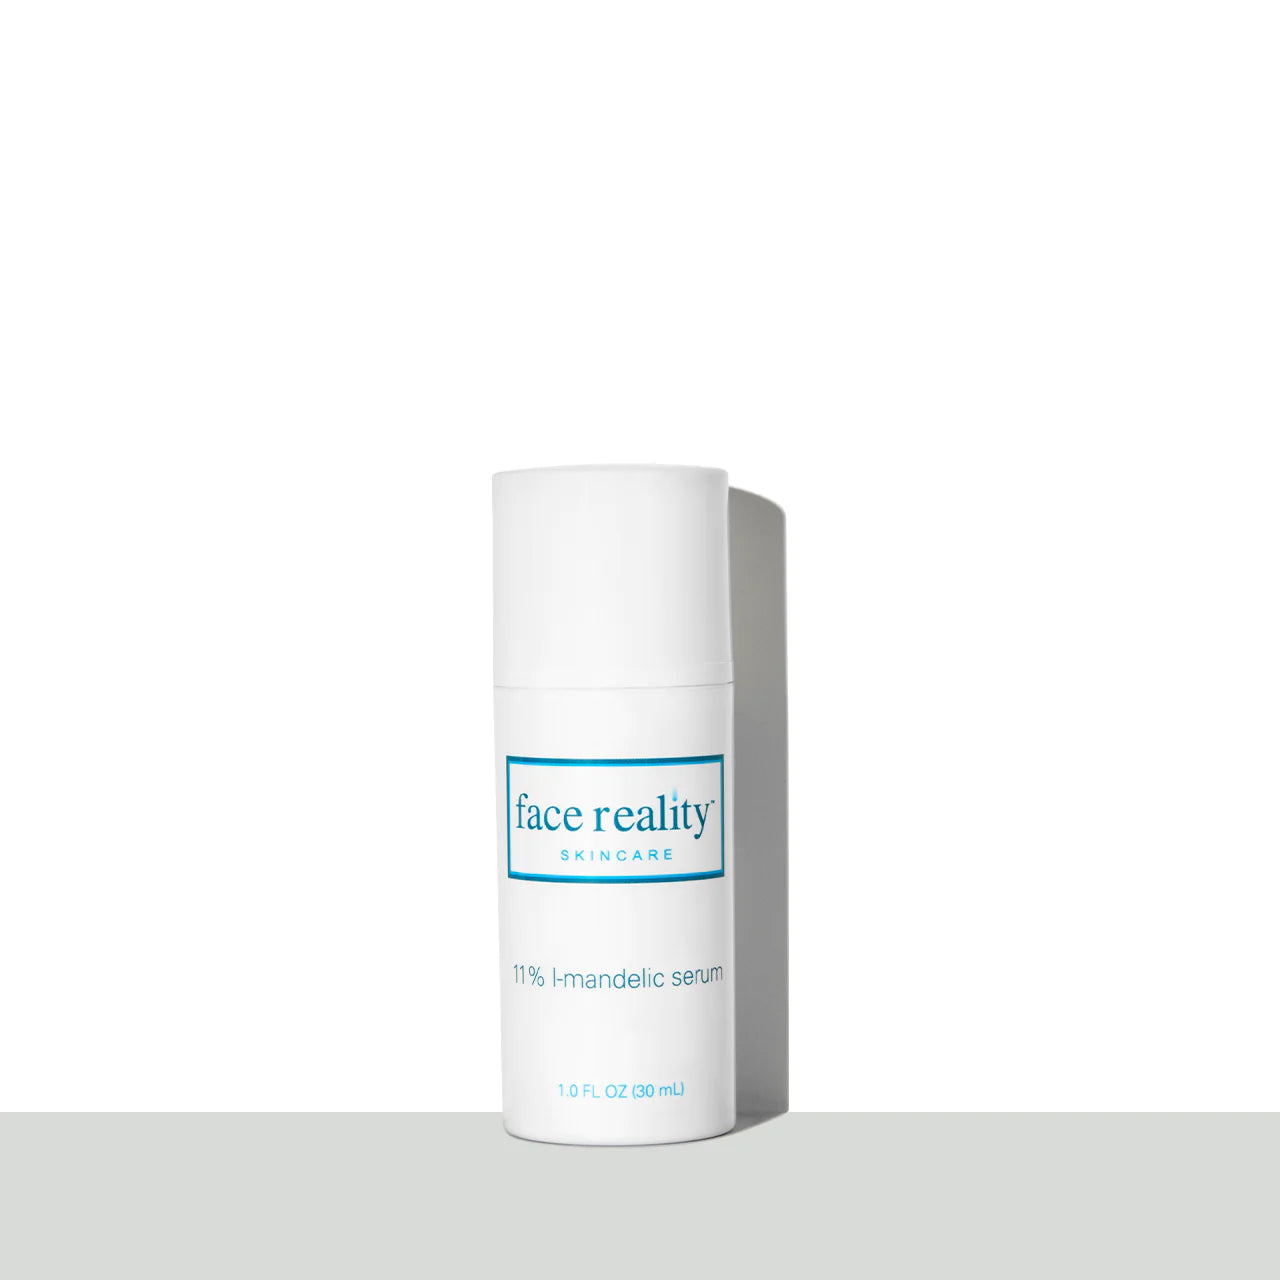 Face Reality Mandelic serum 11% bottle